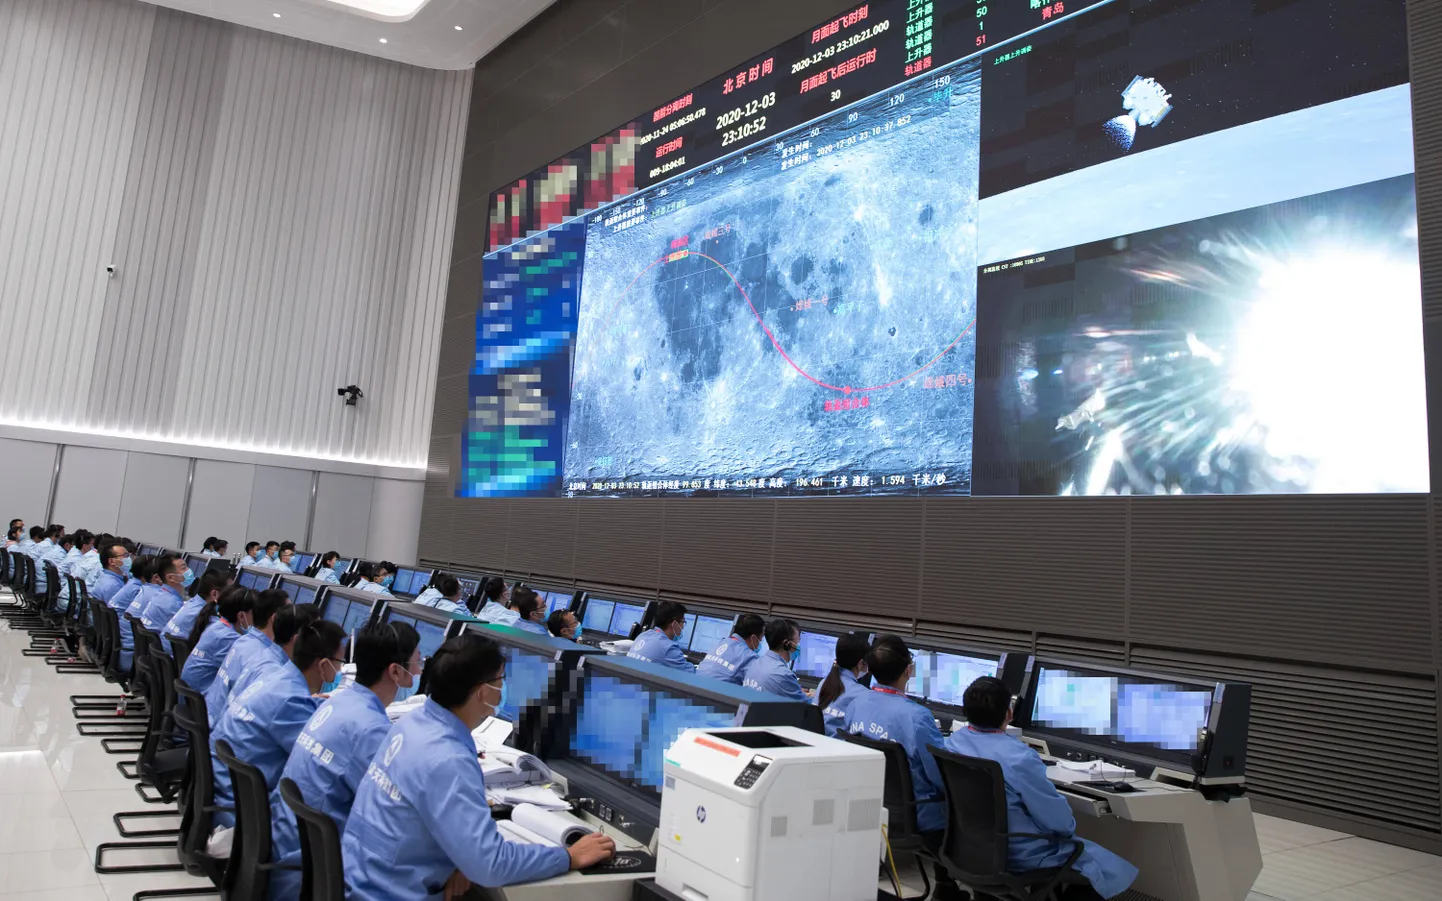 Hiina kosmoselendude juhtimiskeskus.